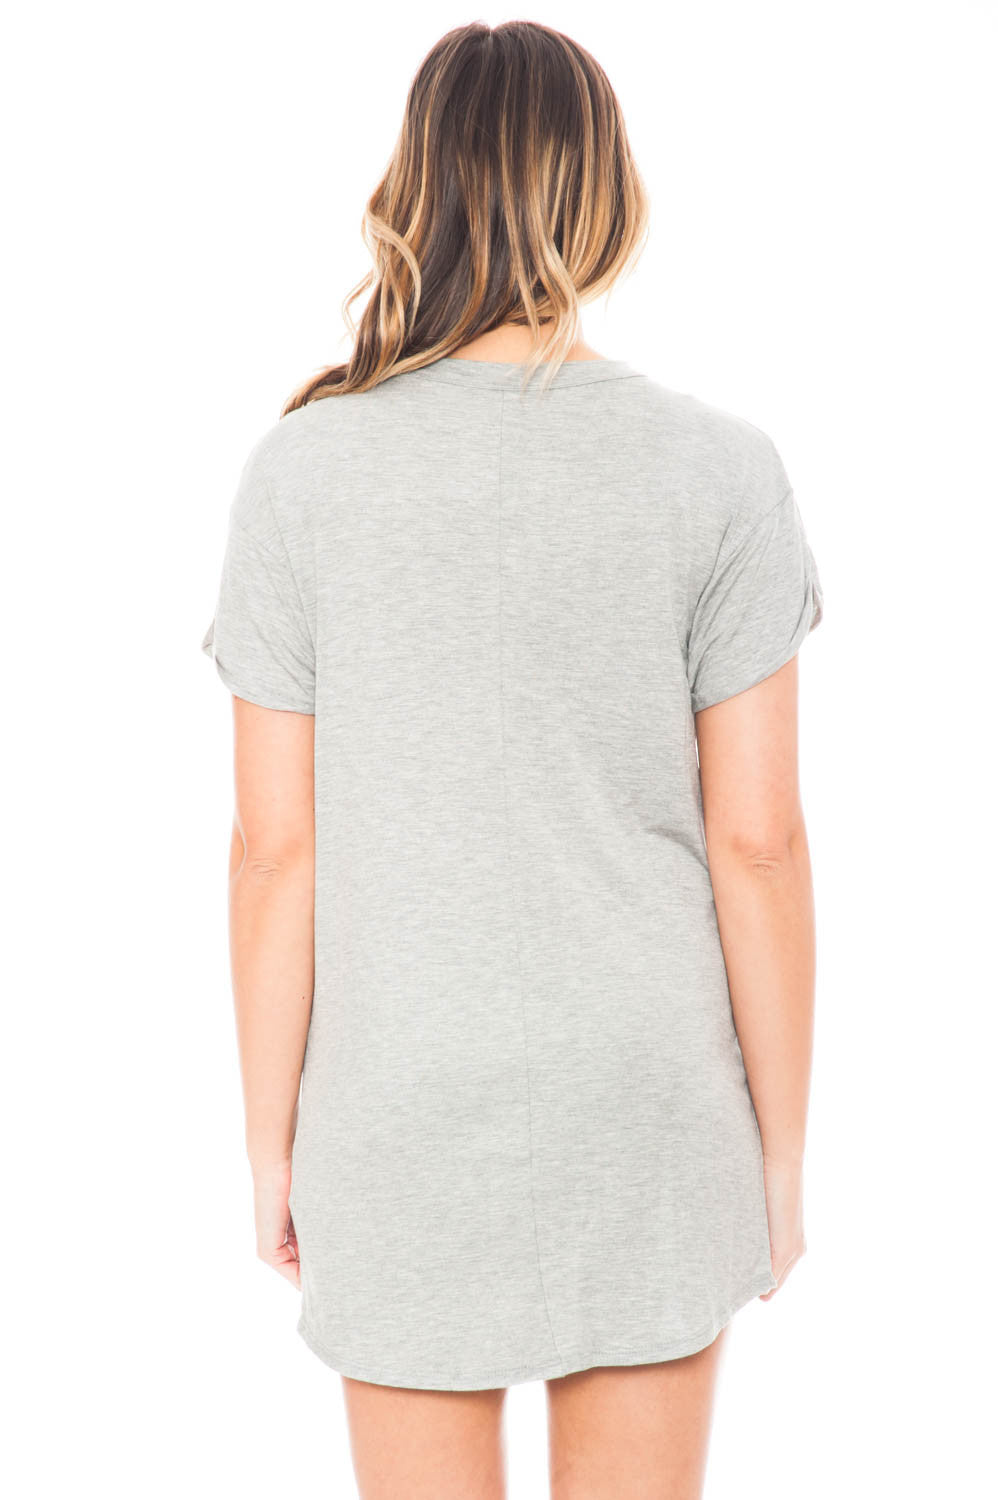 Dress - Short Sleeve Choker T-Shirt Dress